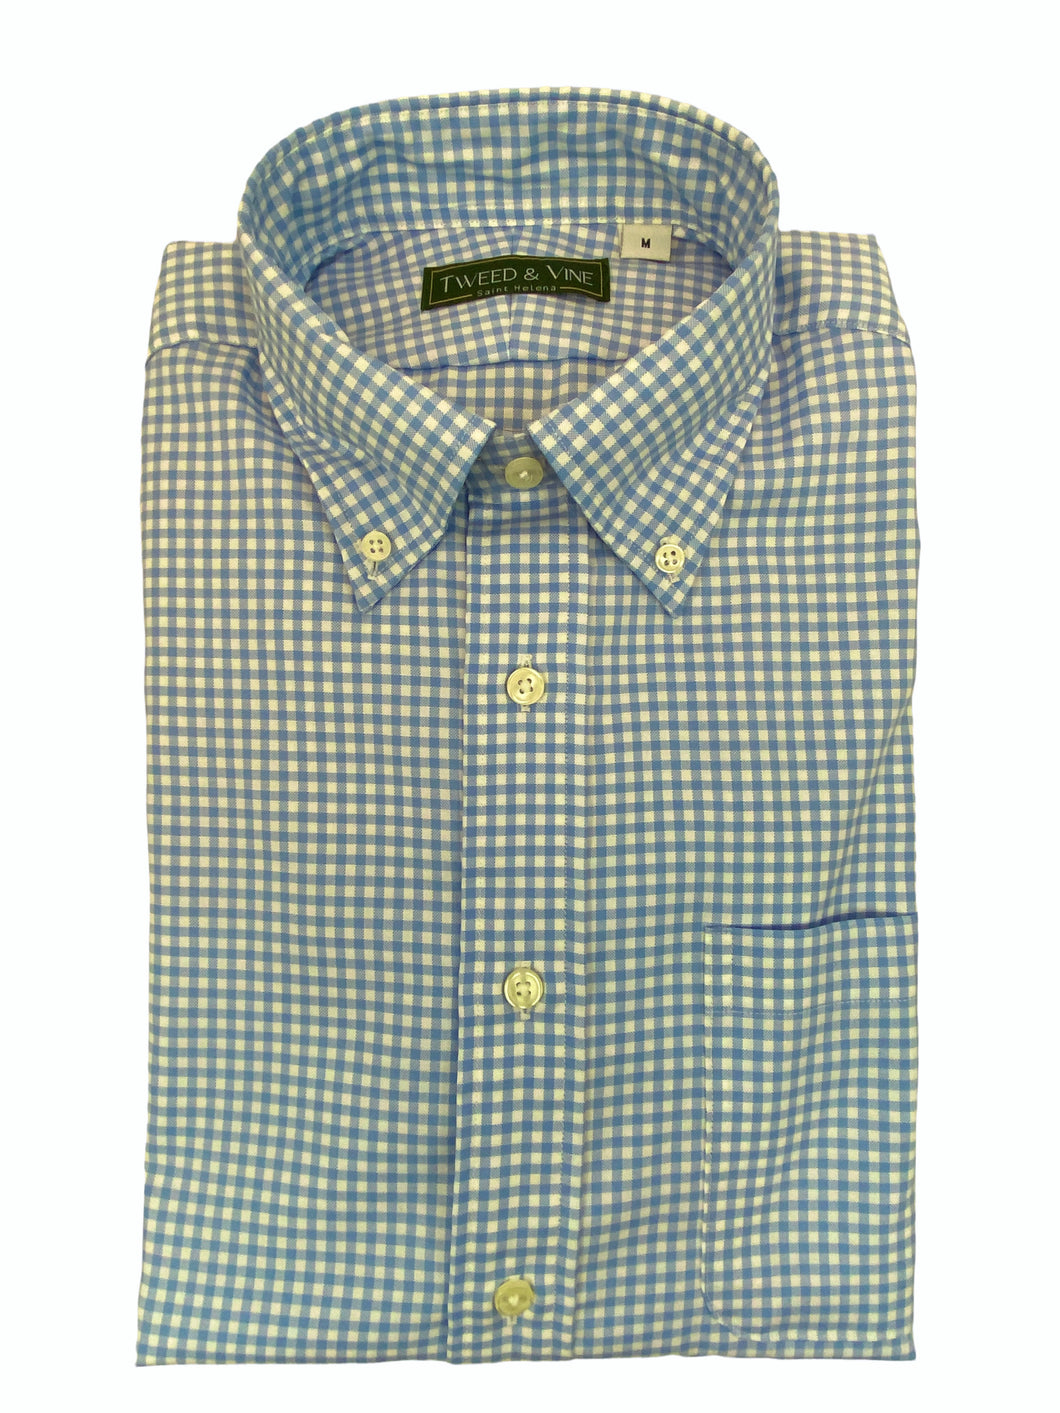 T&V Button Down Shirt - Blue/White Check